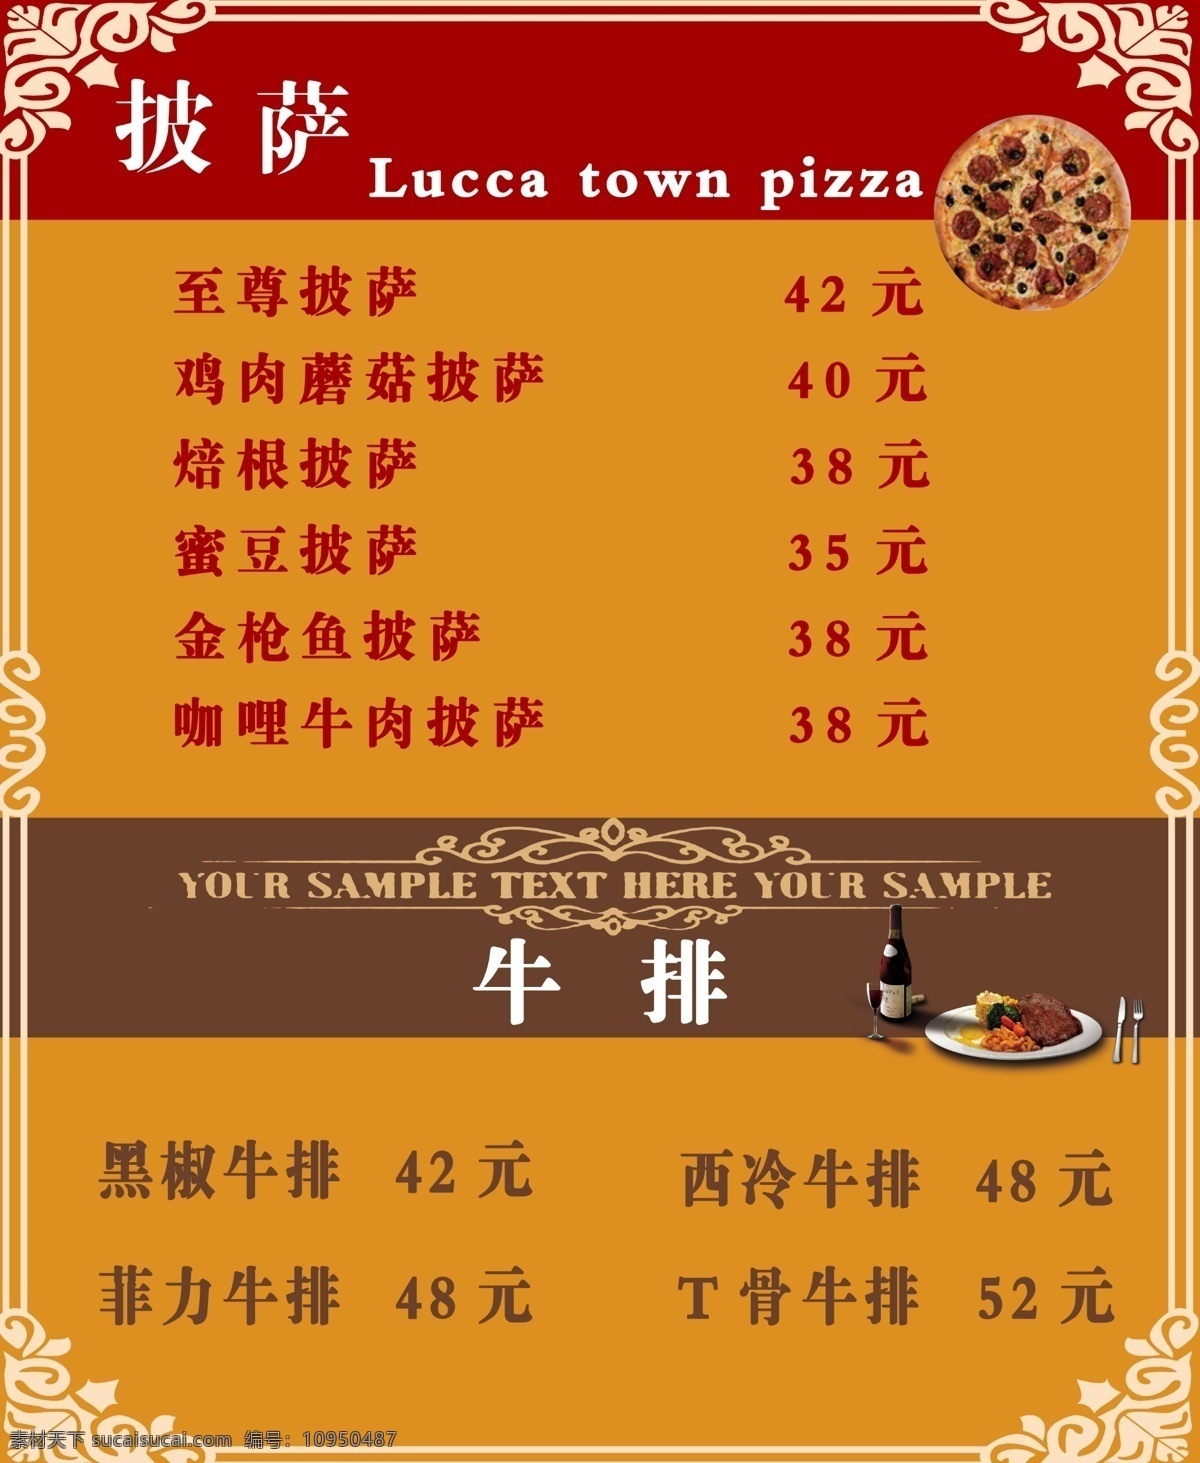 西餐价目表 披萨 牛排 lucca town pizza 洛卡小镇 深色背景 西餐 价目表 分层 橙色